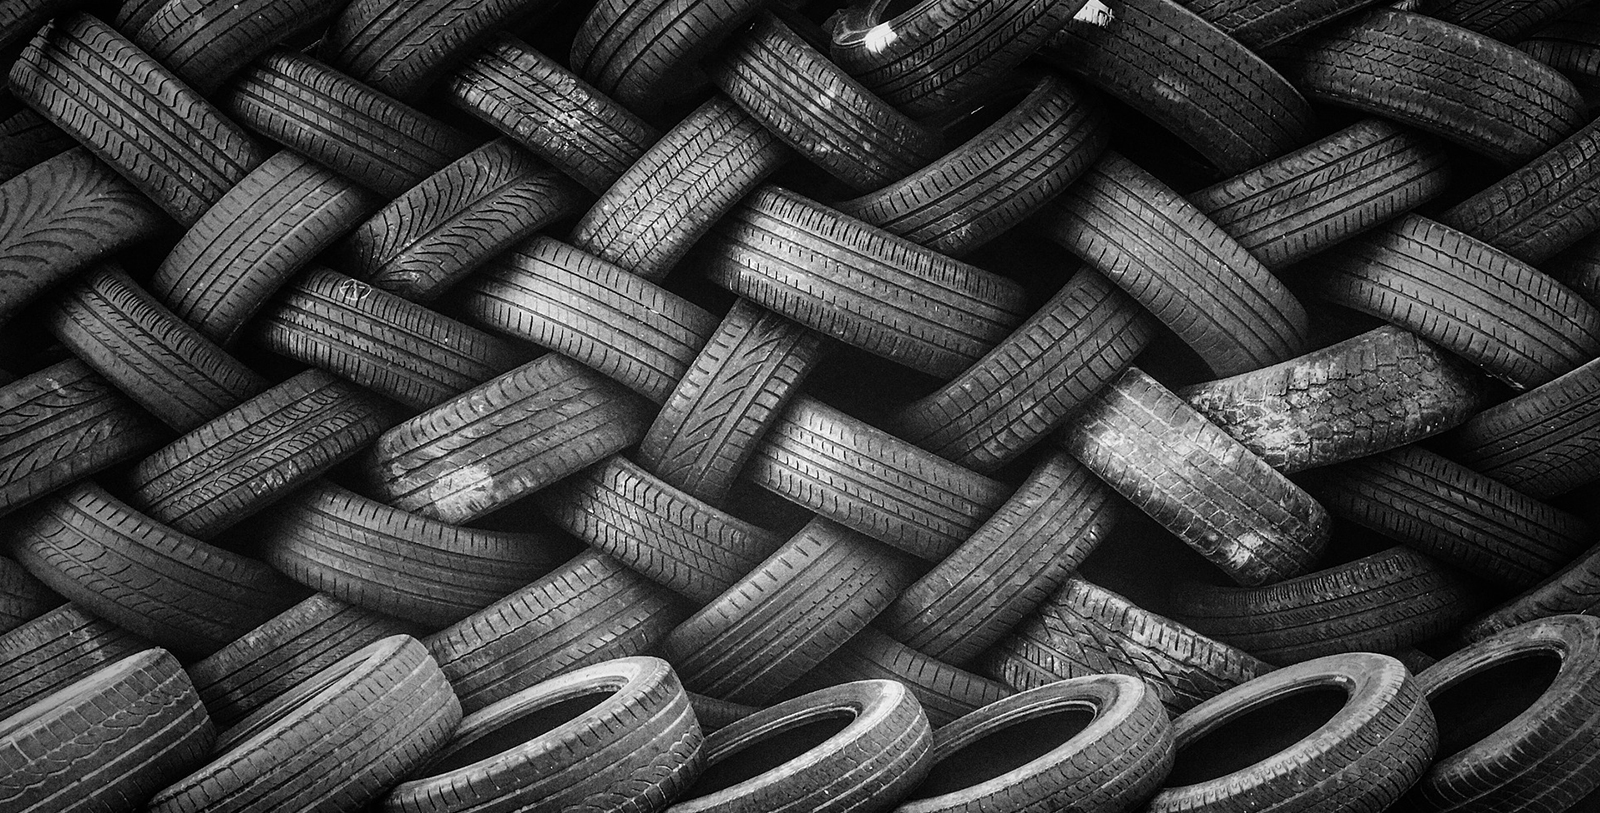 Waste & Used Tires Removal Disposal Pickup in NJ • Responsible waste and used tire removal/pick up in NJ